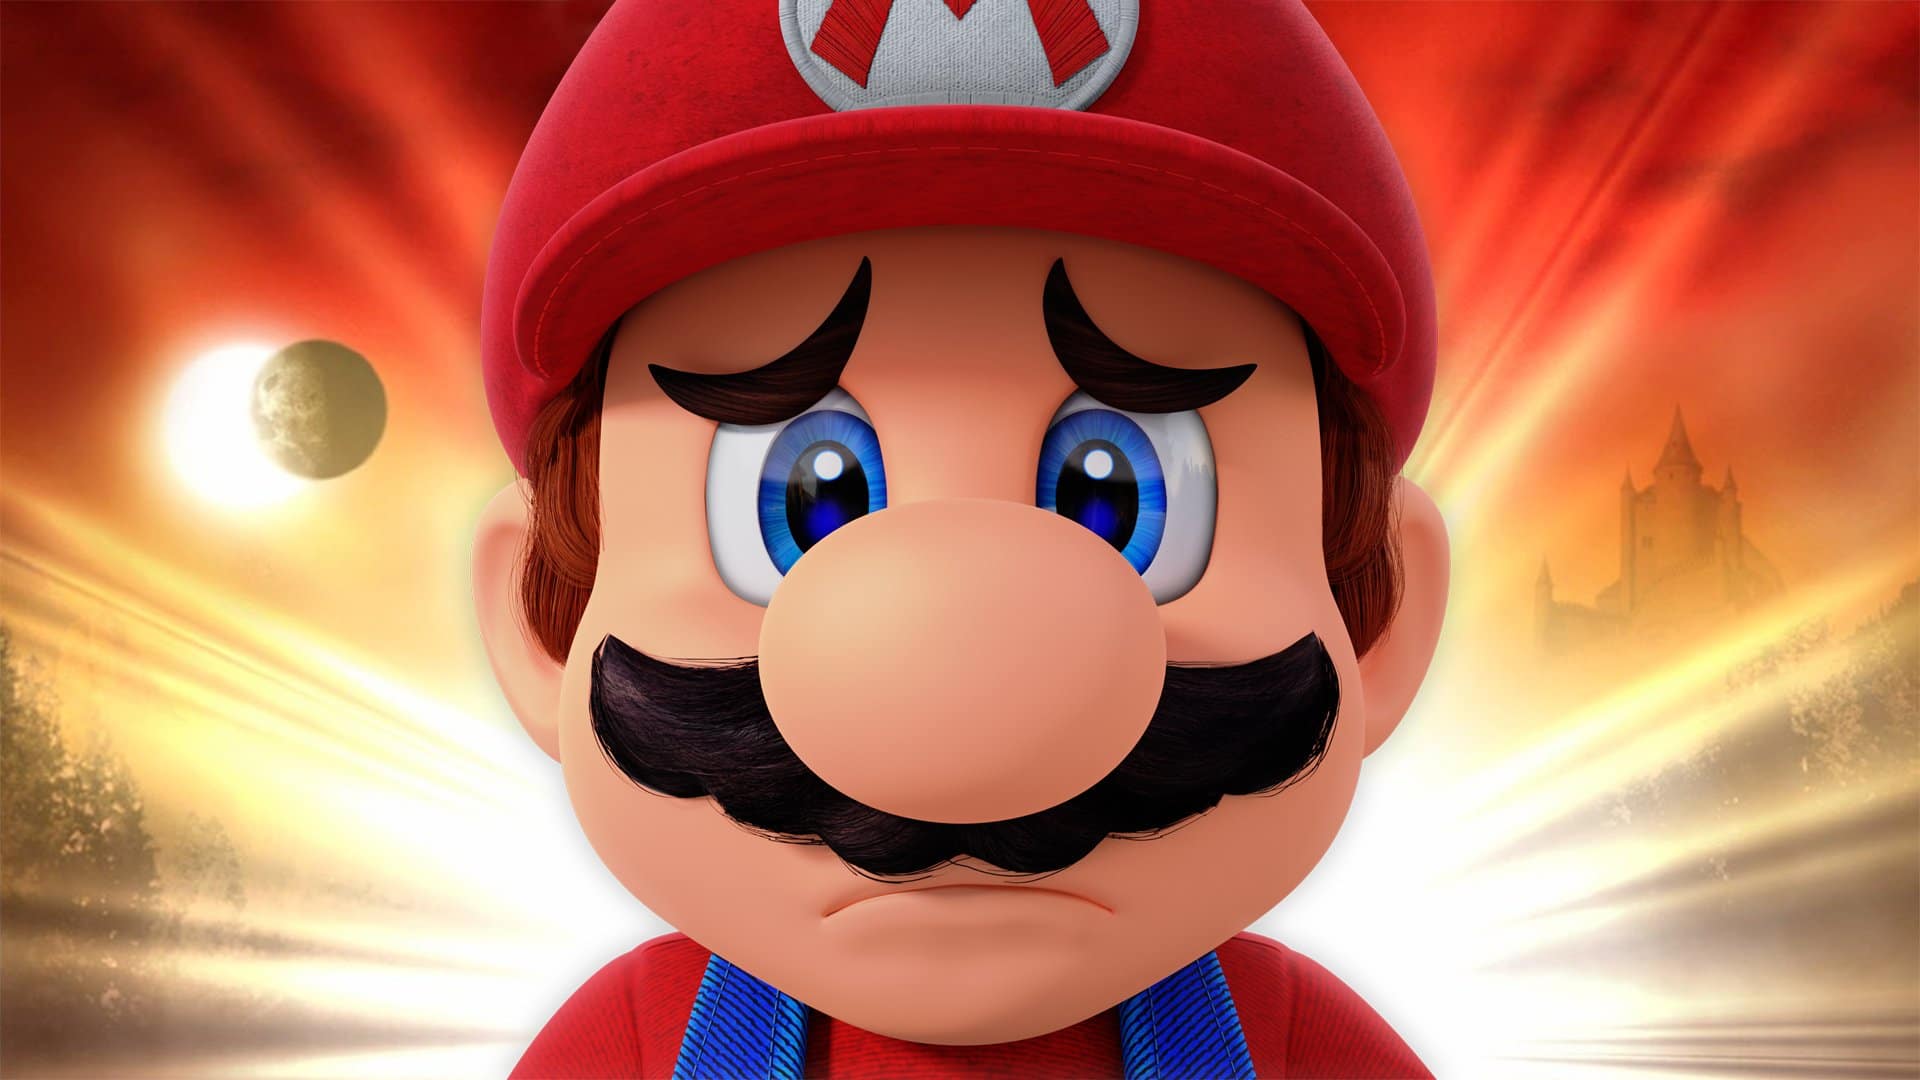 Nintendo of America, Mario Bros